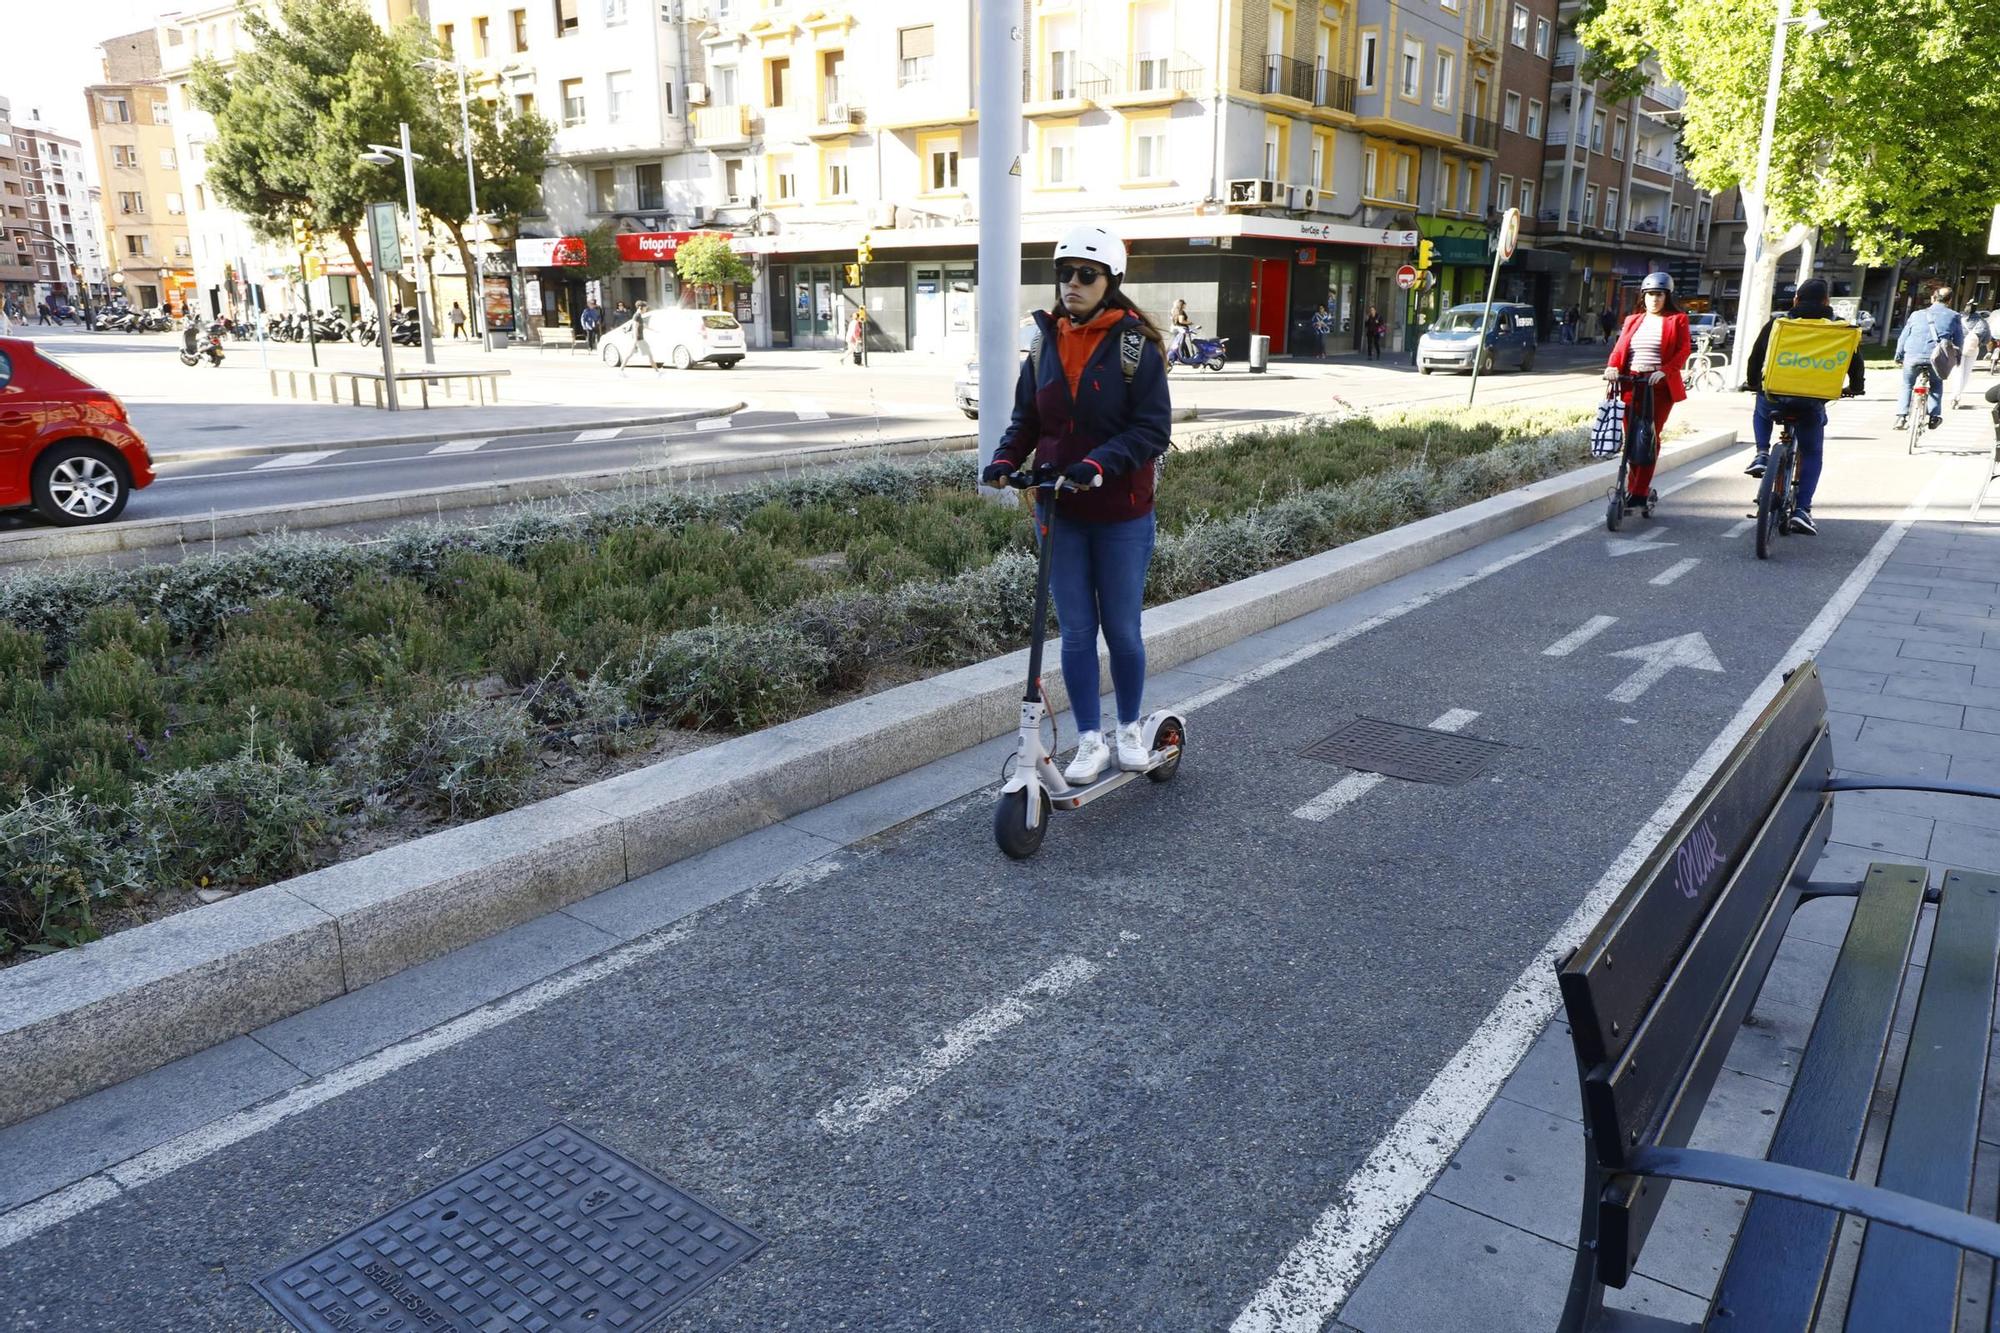 Este es el carril bici más utilizado de Zaragoza